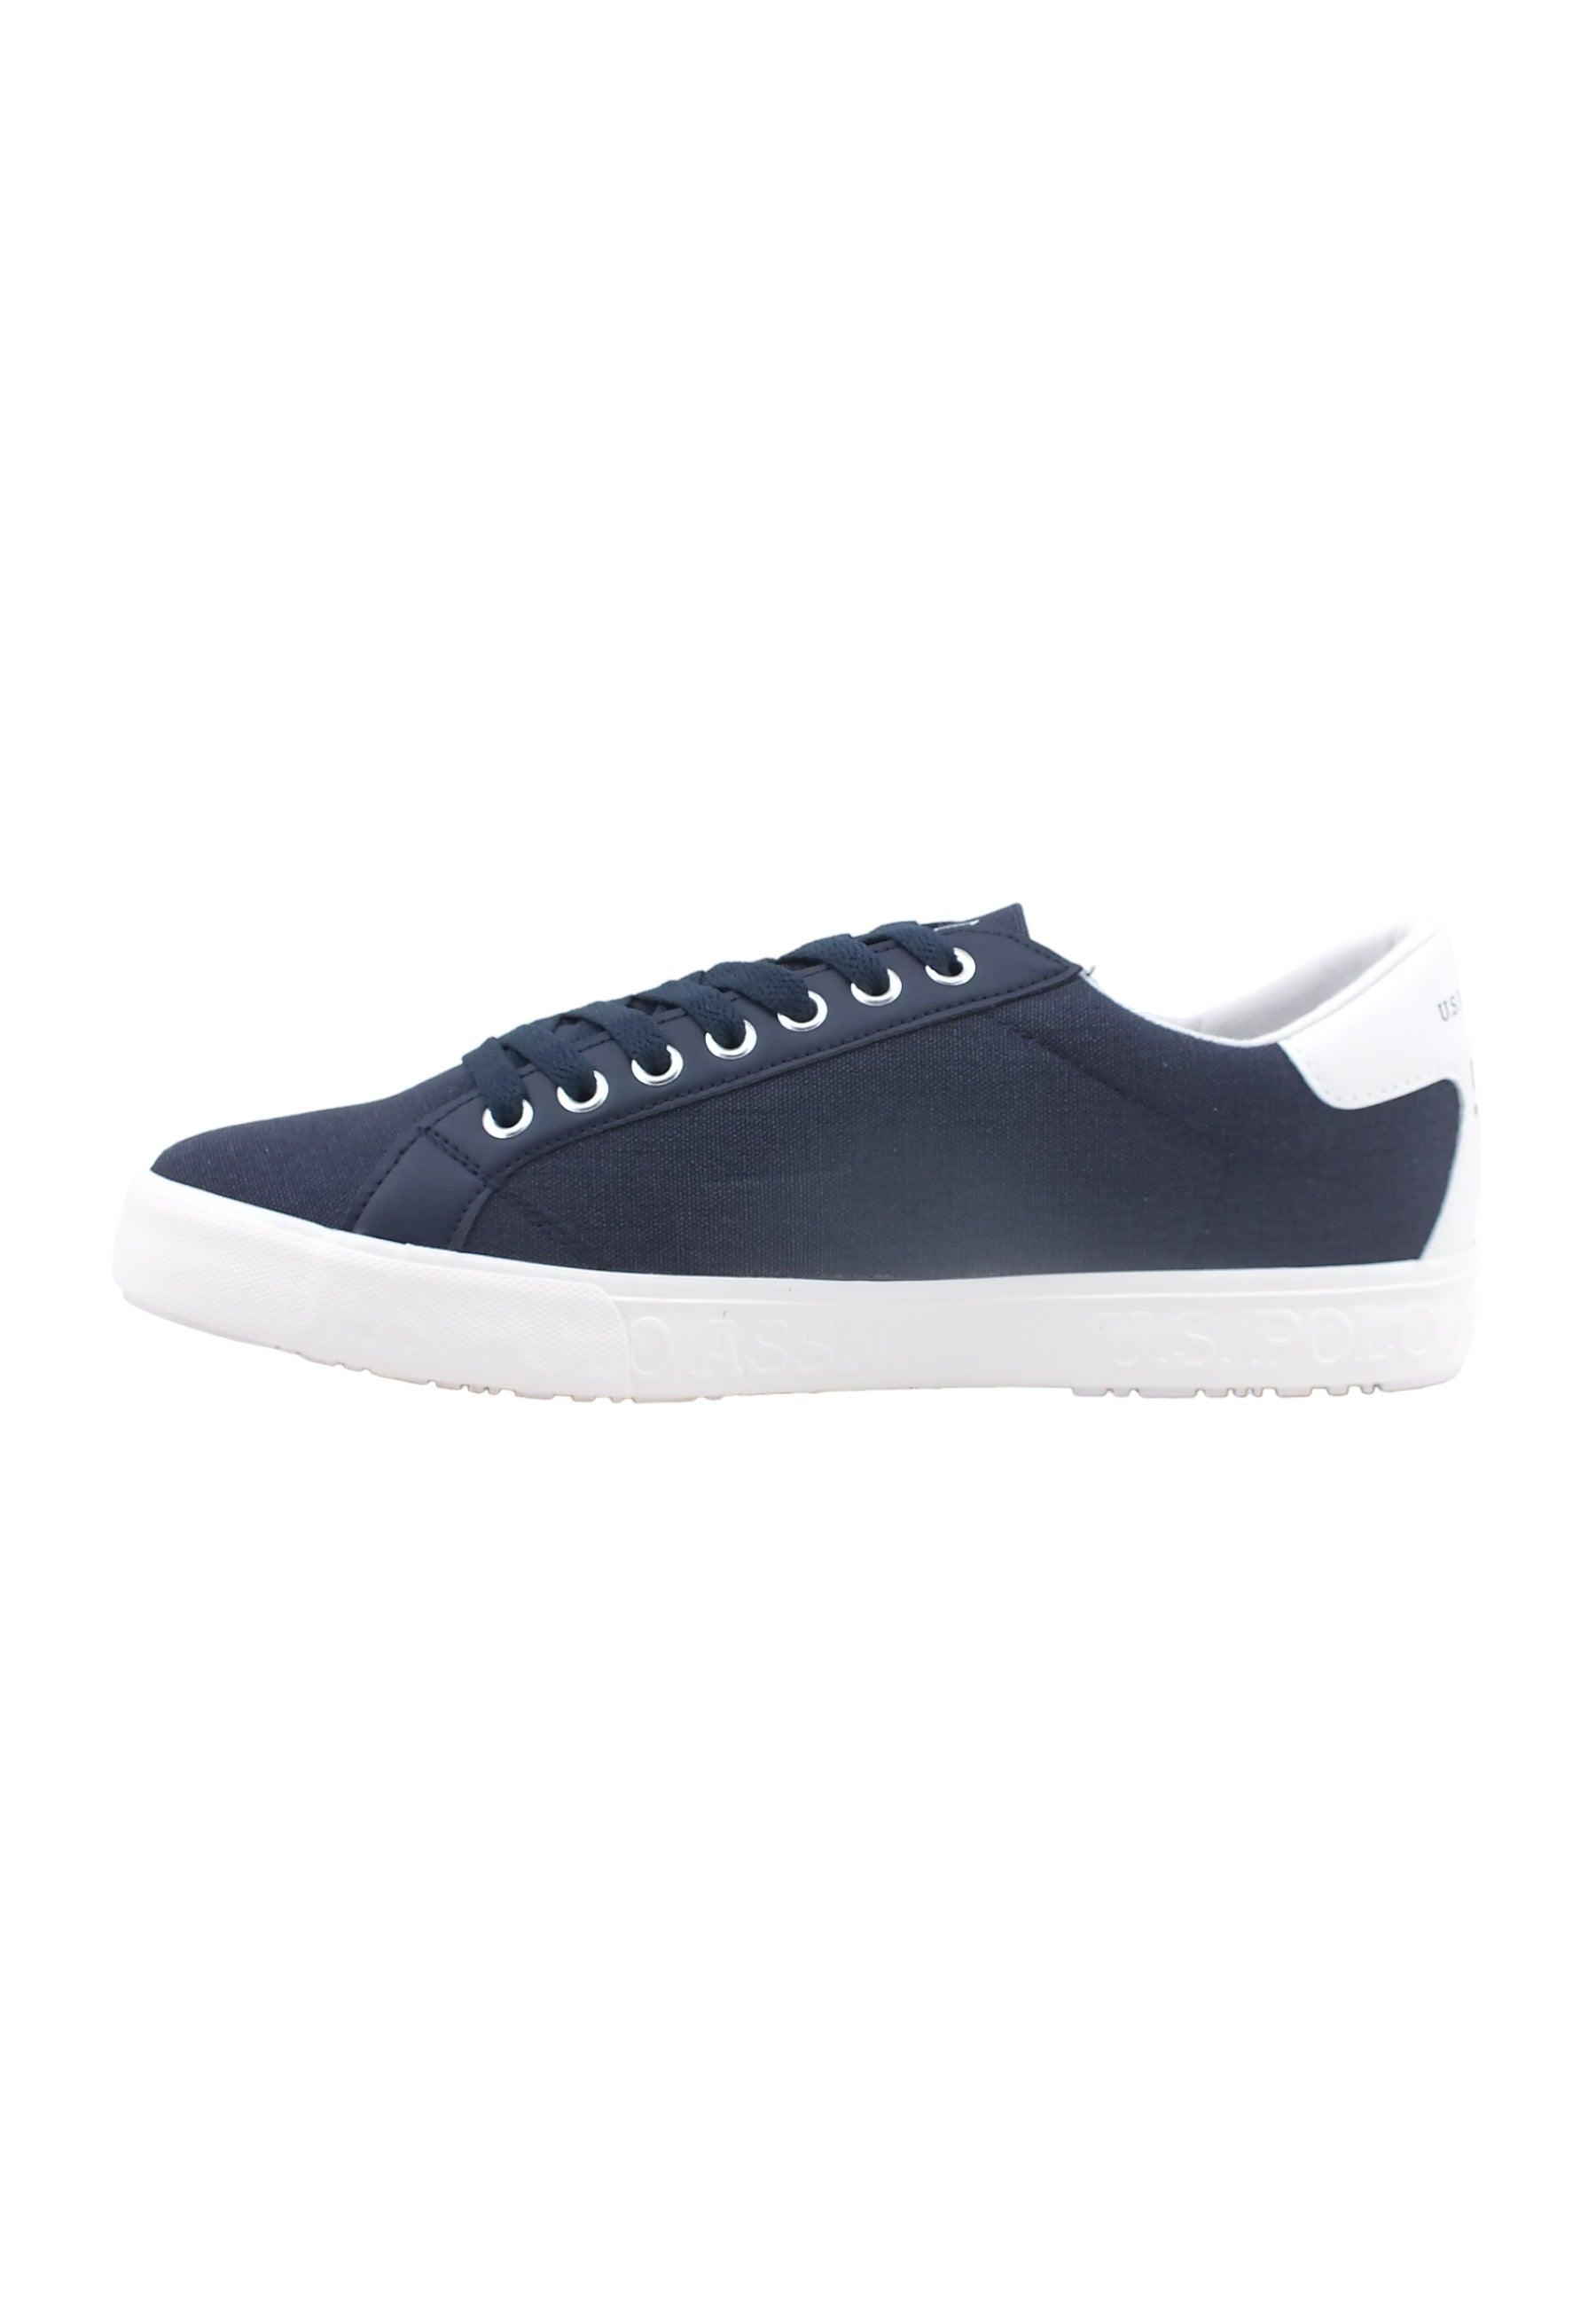 U.S. POLO ASSN. Sneaker Uomo Dark Blue MARCS006 - Sandrini Calzature e Abbigliamento